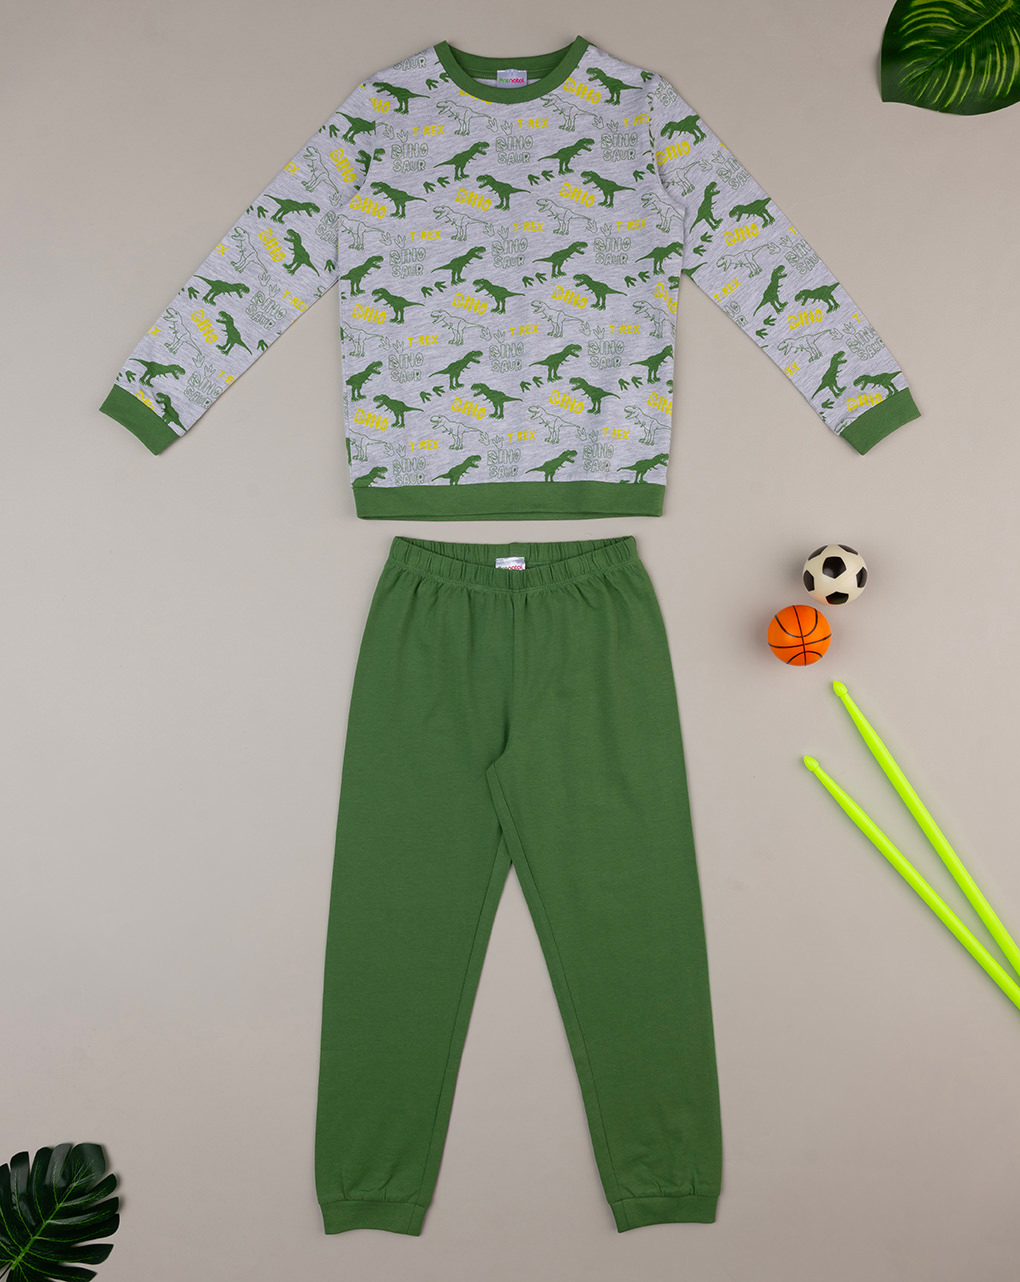 παιδική πιτζάμα γκρι/πράσινη με δεινόσαυρους για αγόρι